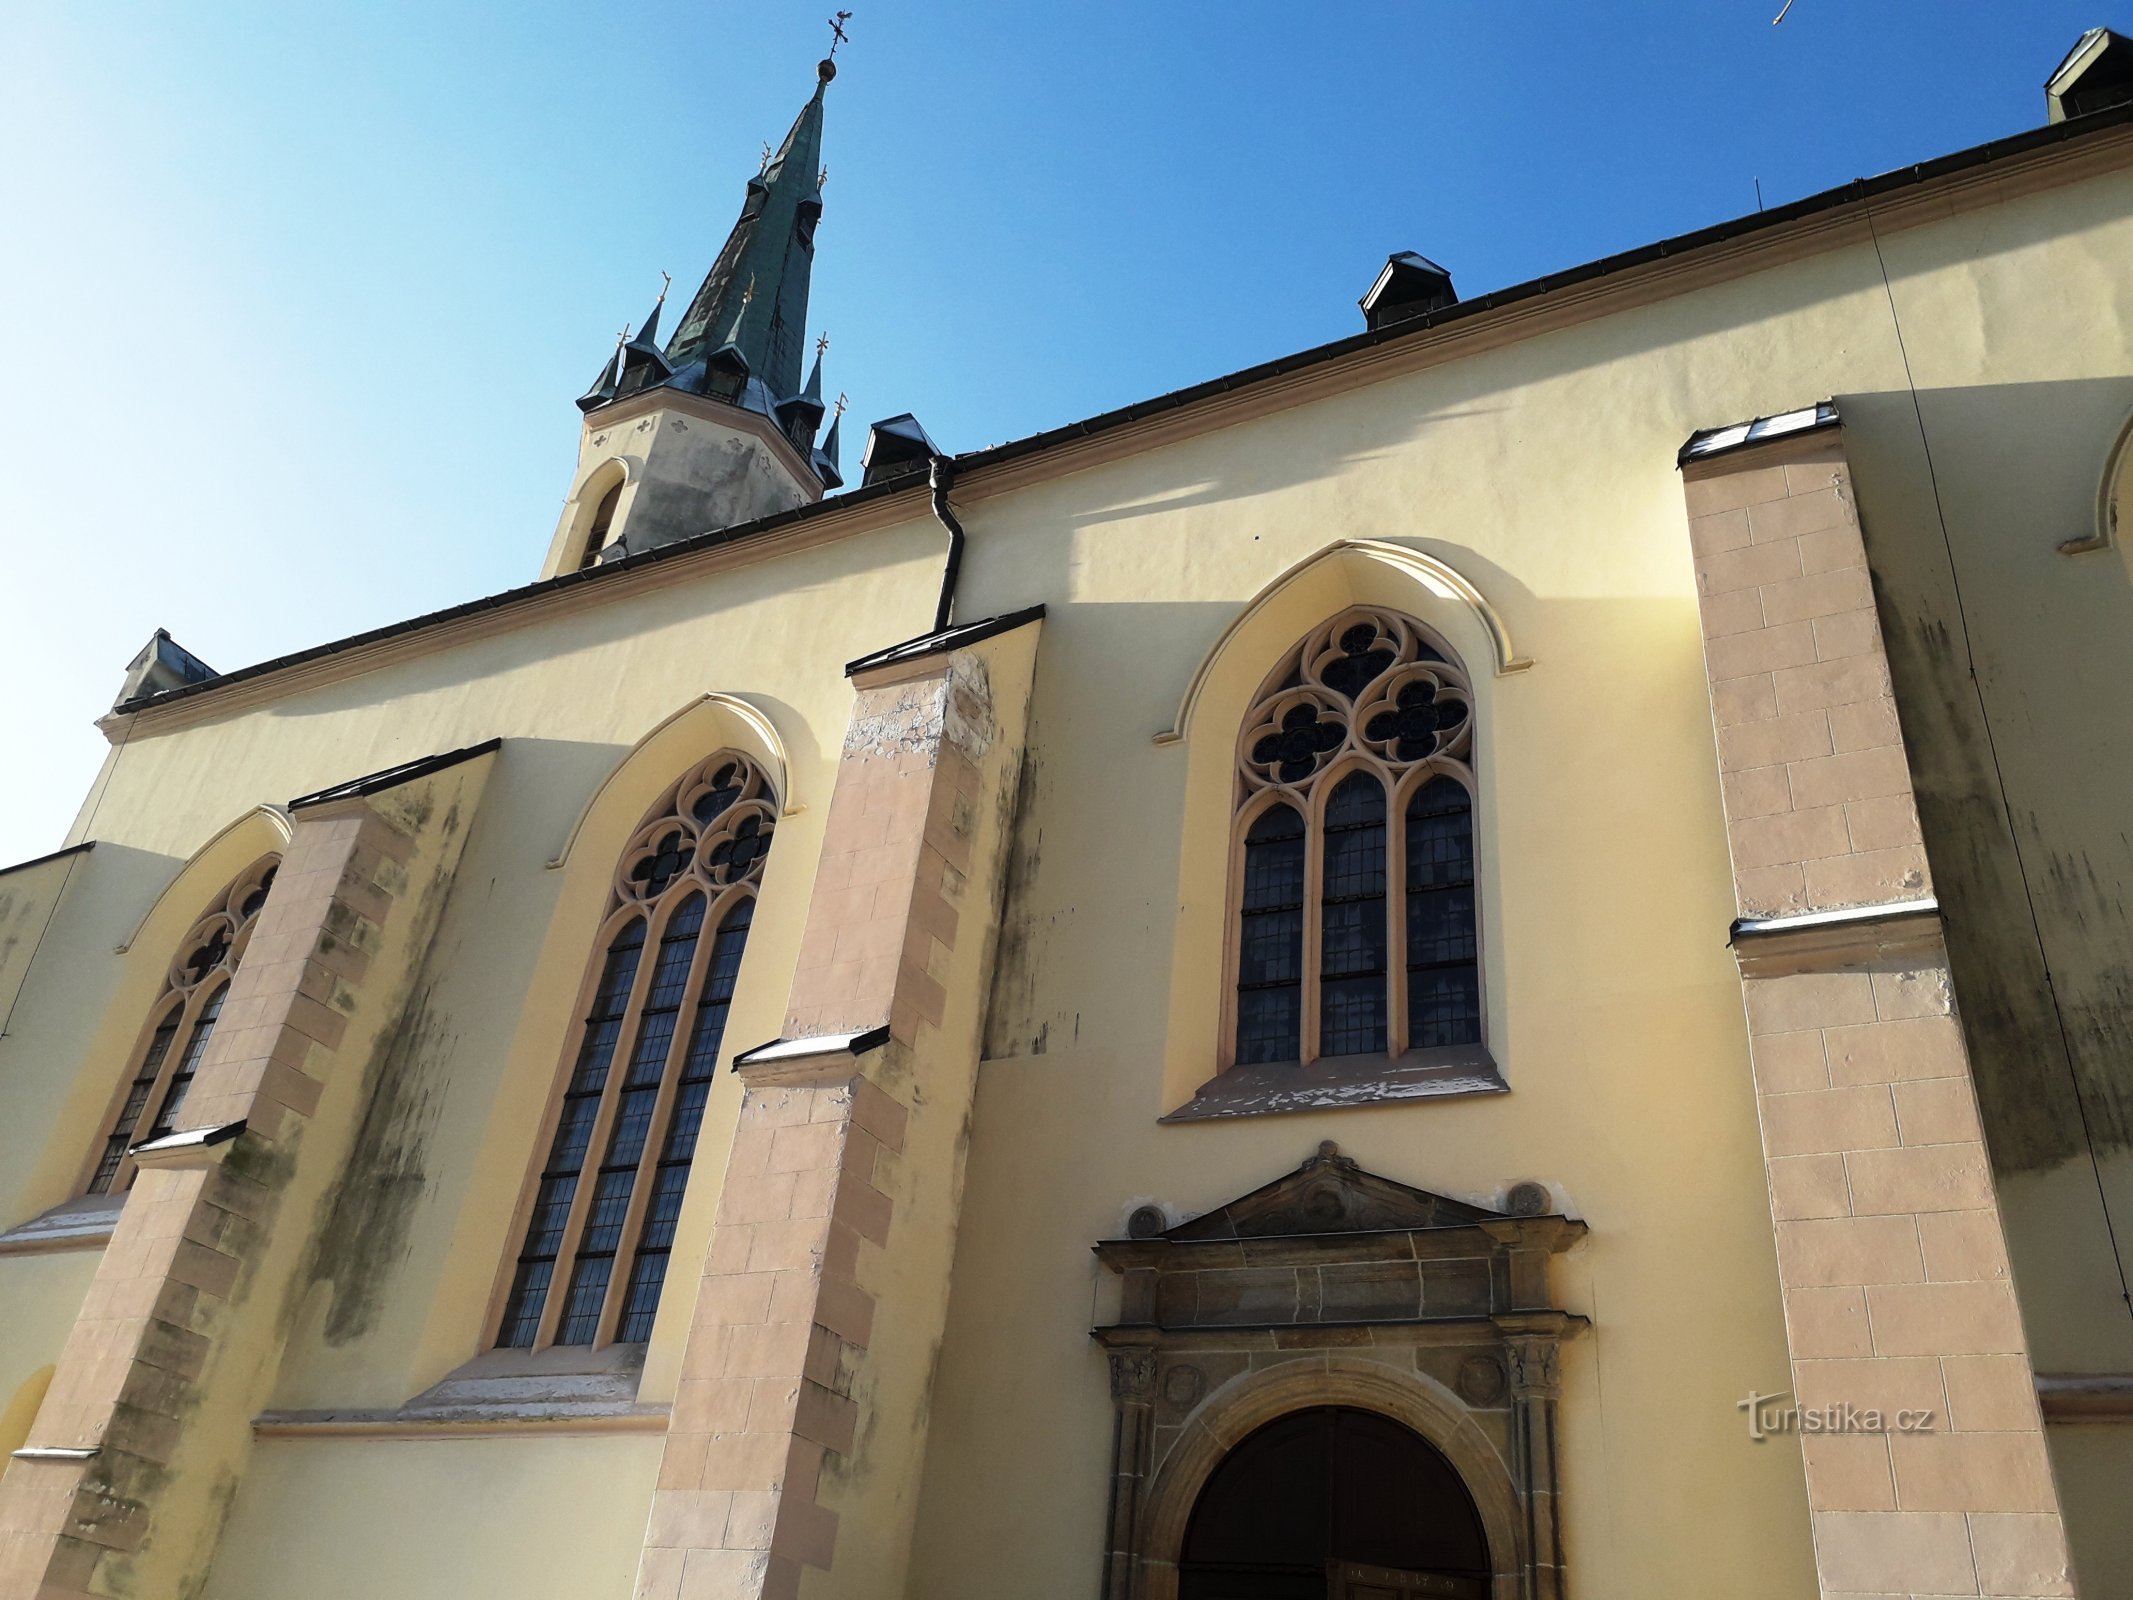 Cerkev sv. Jáchyma s strani